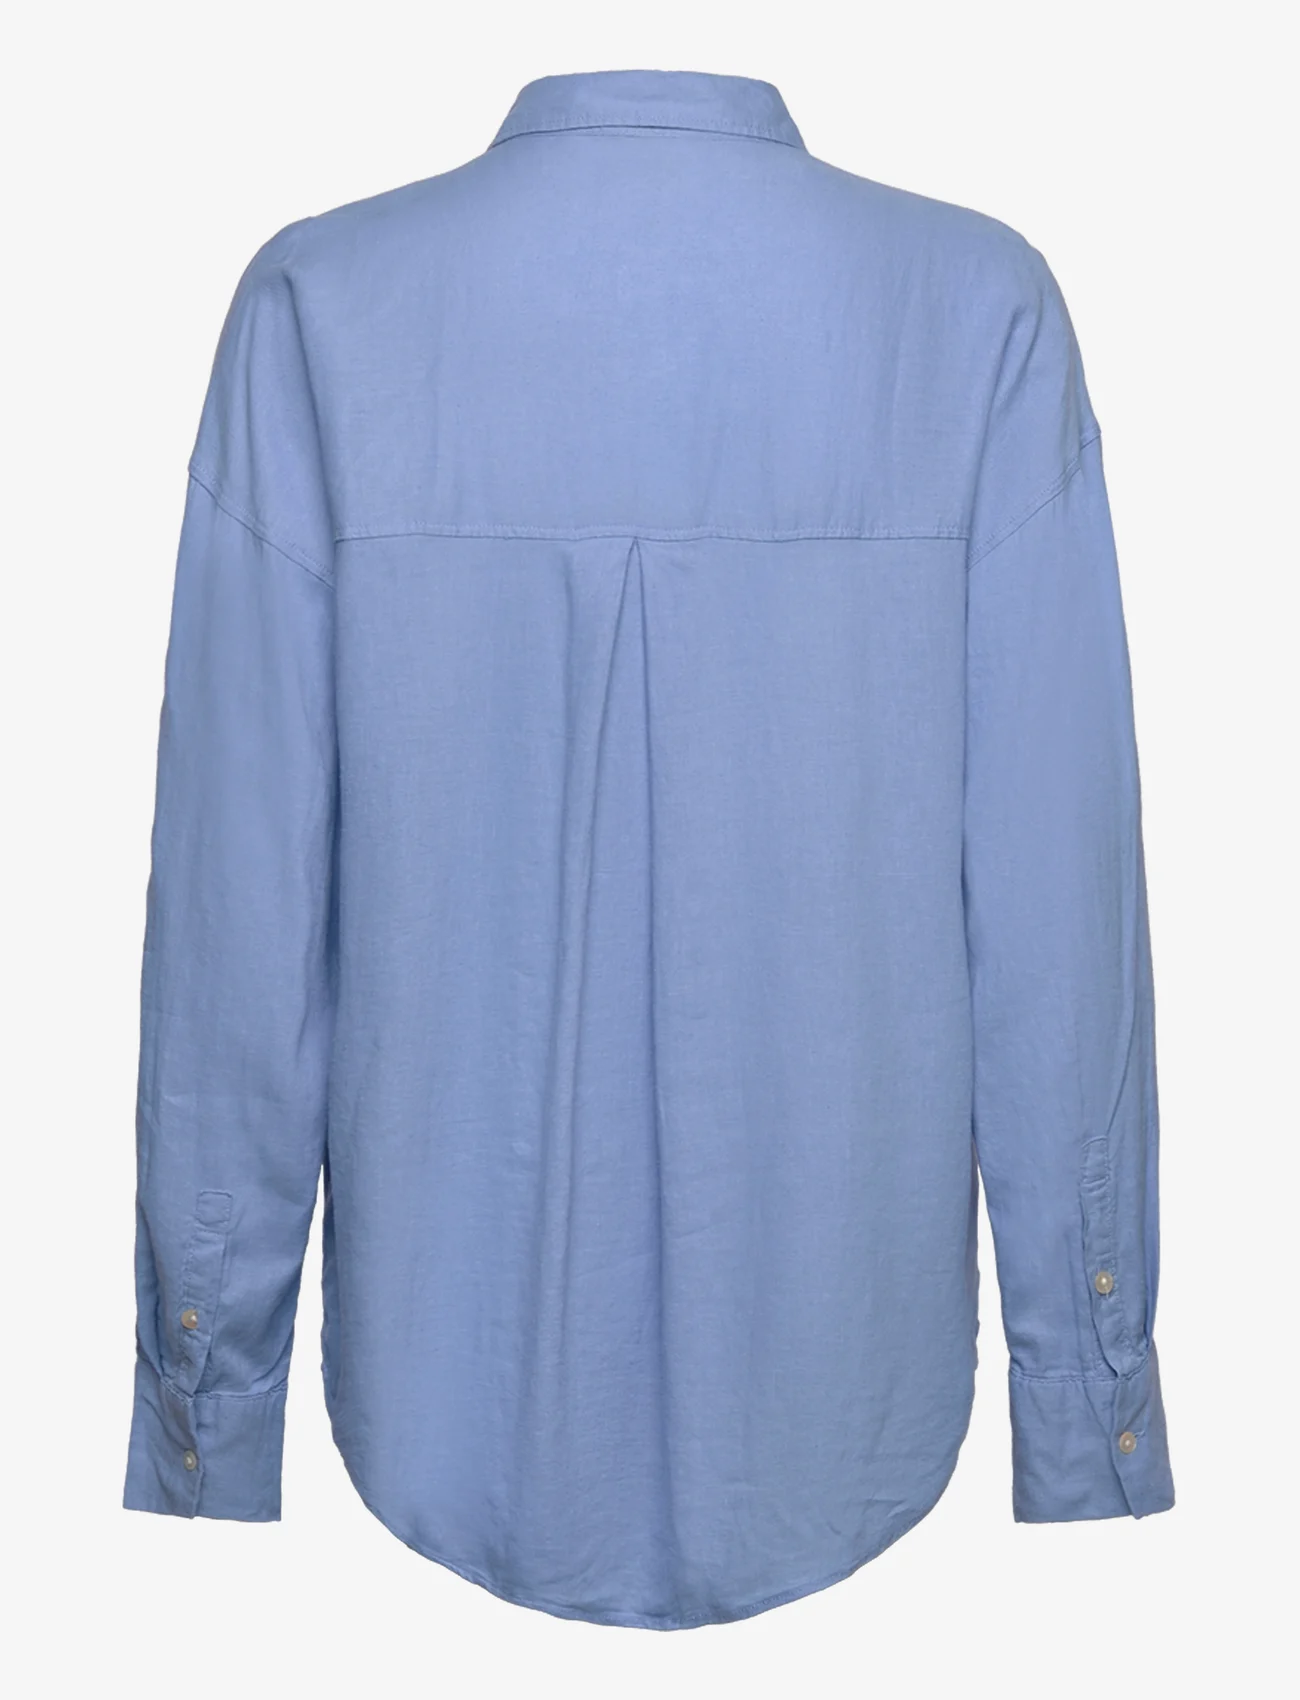 Lindex - Shirt Magda Linen blend - linskjorter - light blue - 1